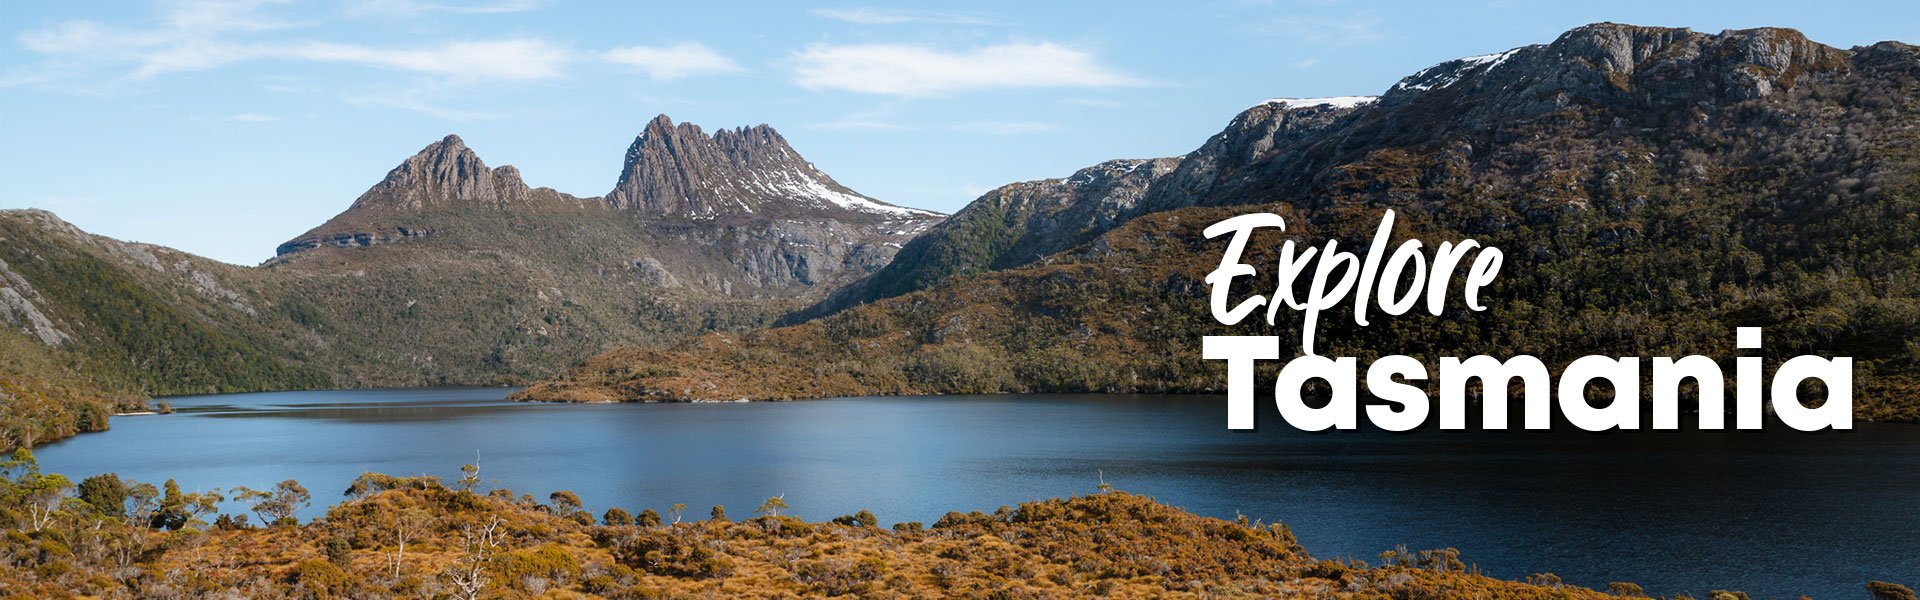 Explore Tasmania banner